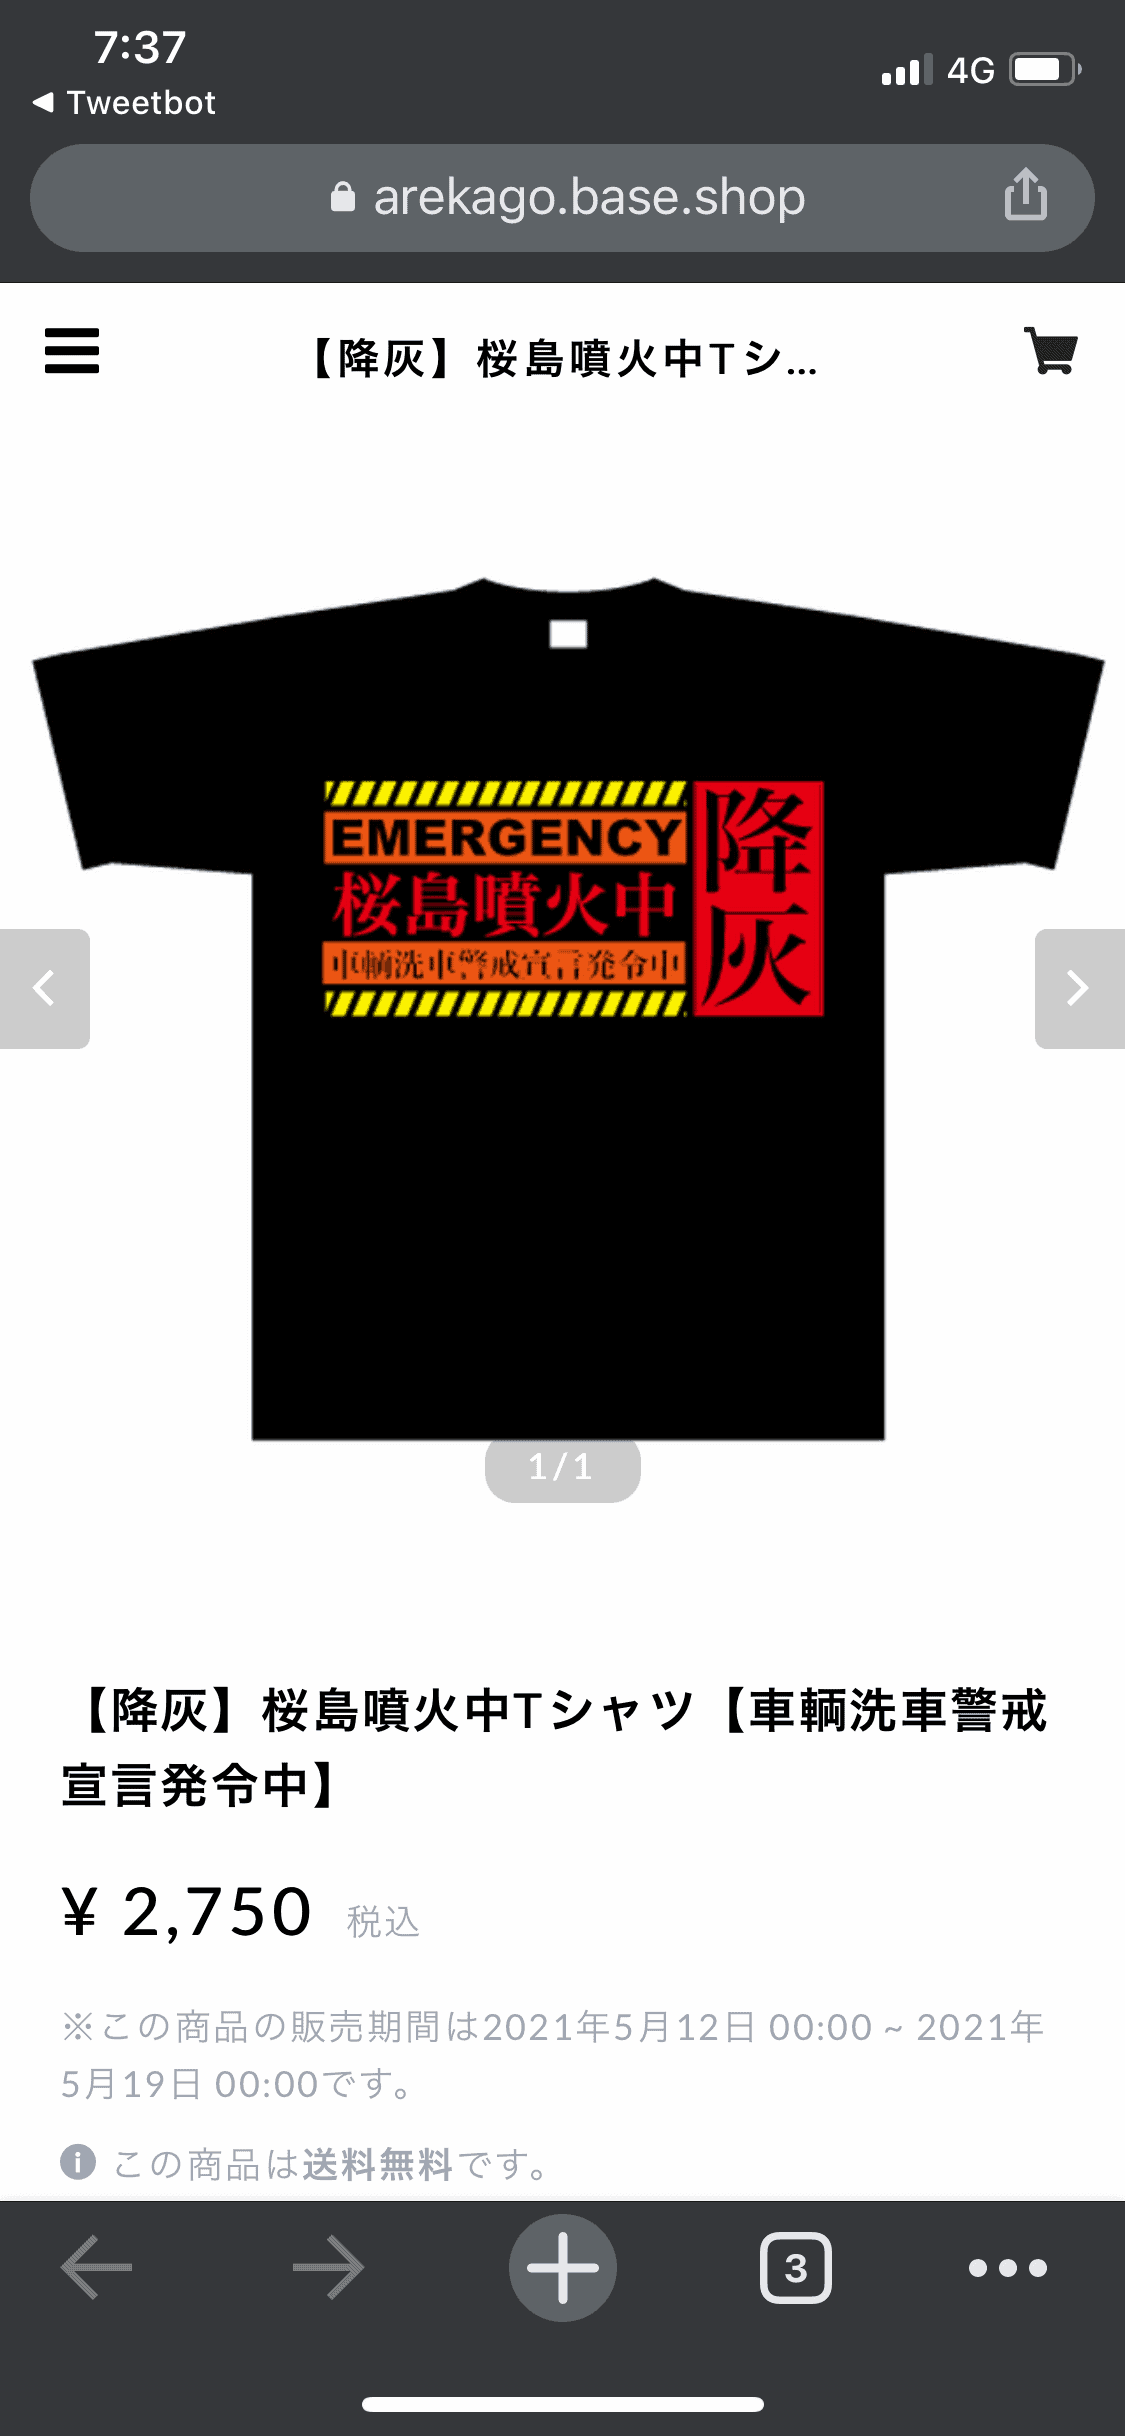 鹿児島民の２０２１年夏の１枚に！「桜島噴火警戒Tシャツ」爆誕！